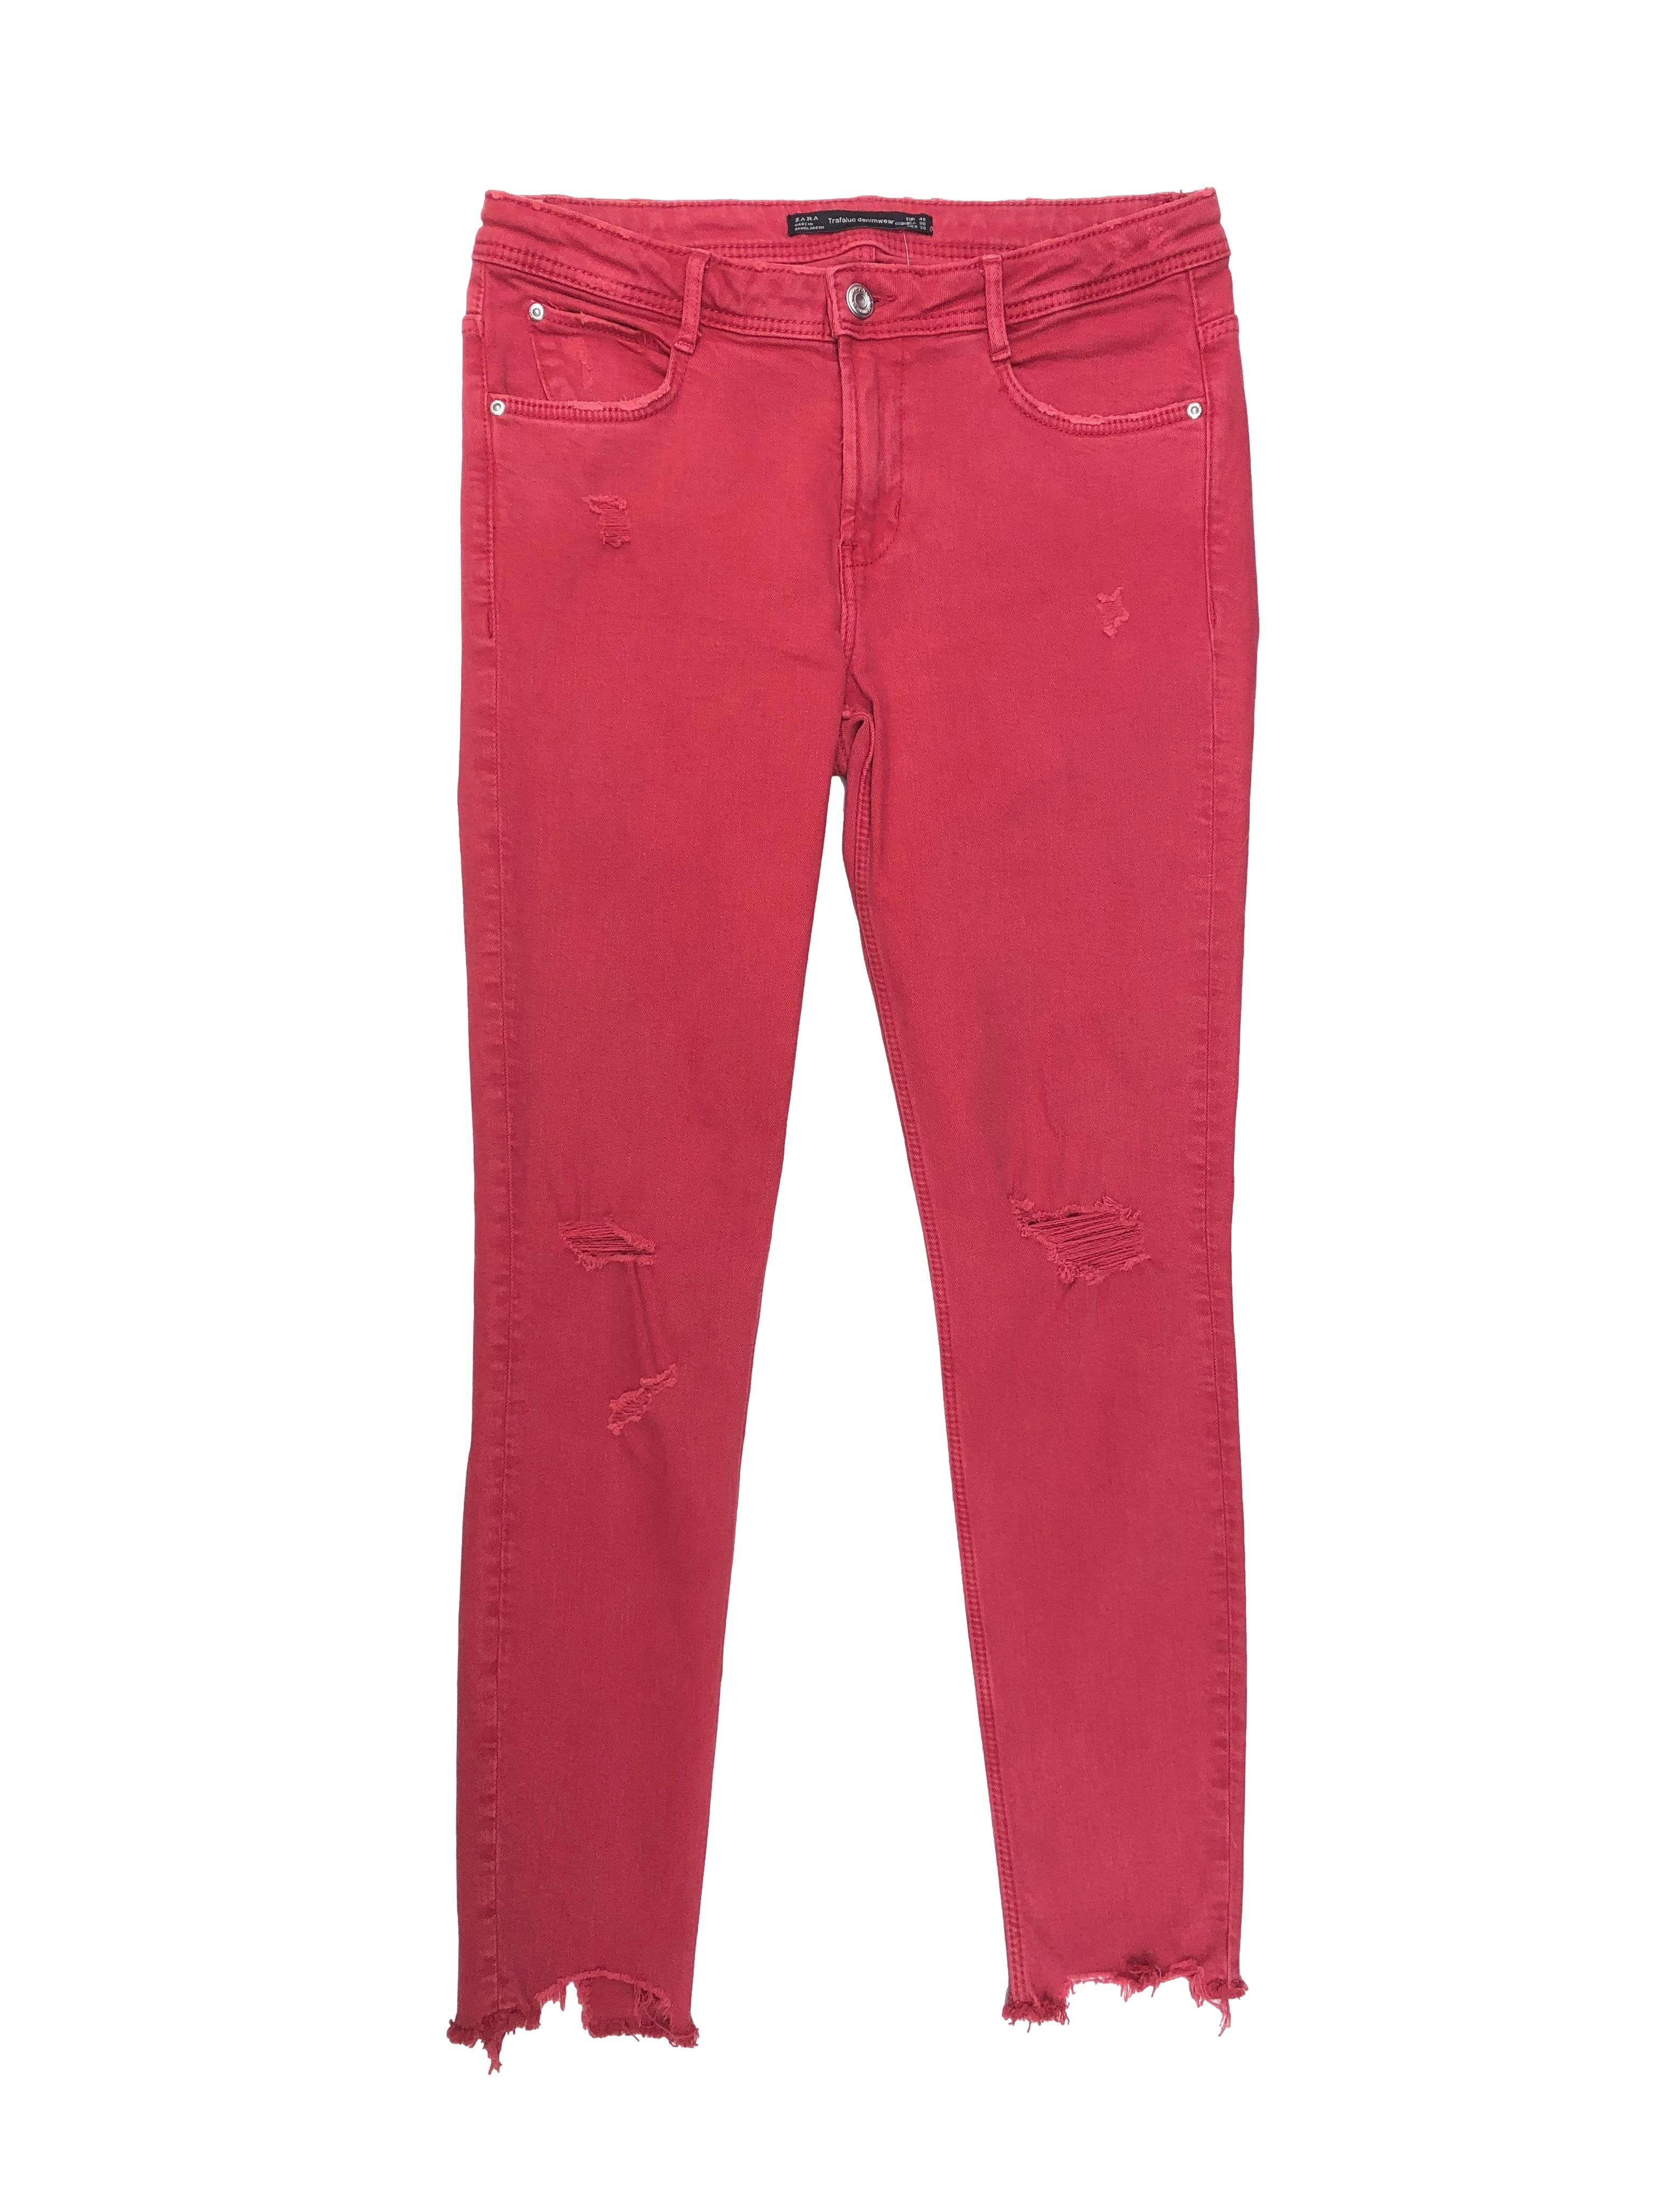 Skinny jean Zara rojo efecto lavado, con rasgados y basta cropped. Cintura 74cm Tiro 23cm Largo 92cm